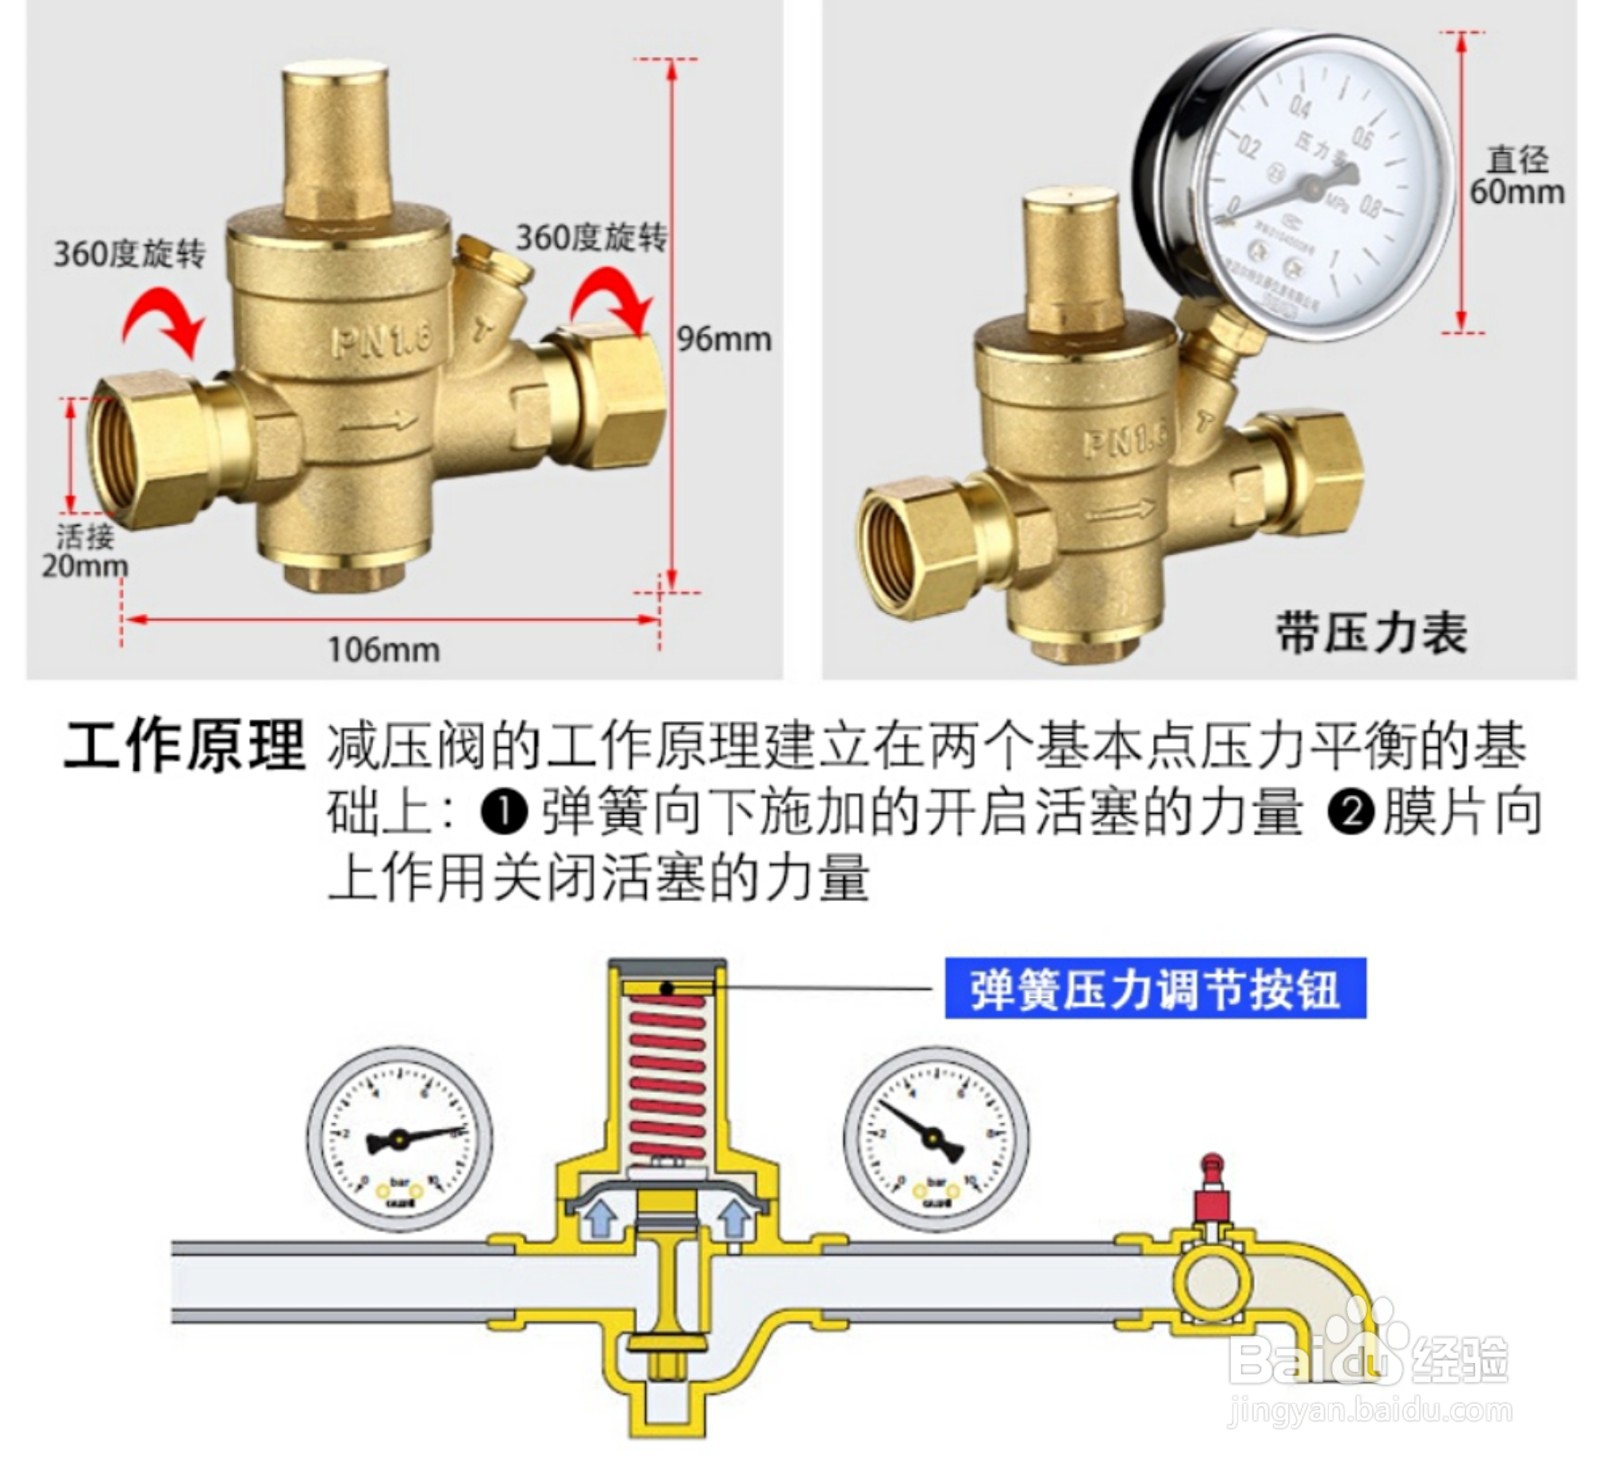 若由于水压过高导致热水器排气阀漏水,可以请专业人员上门安装减压